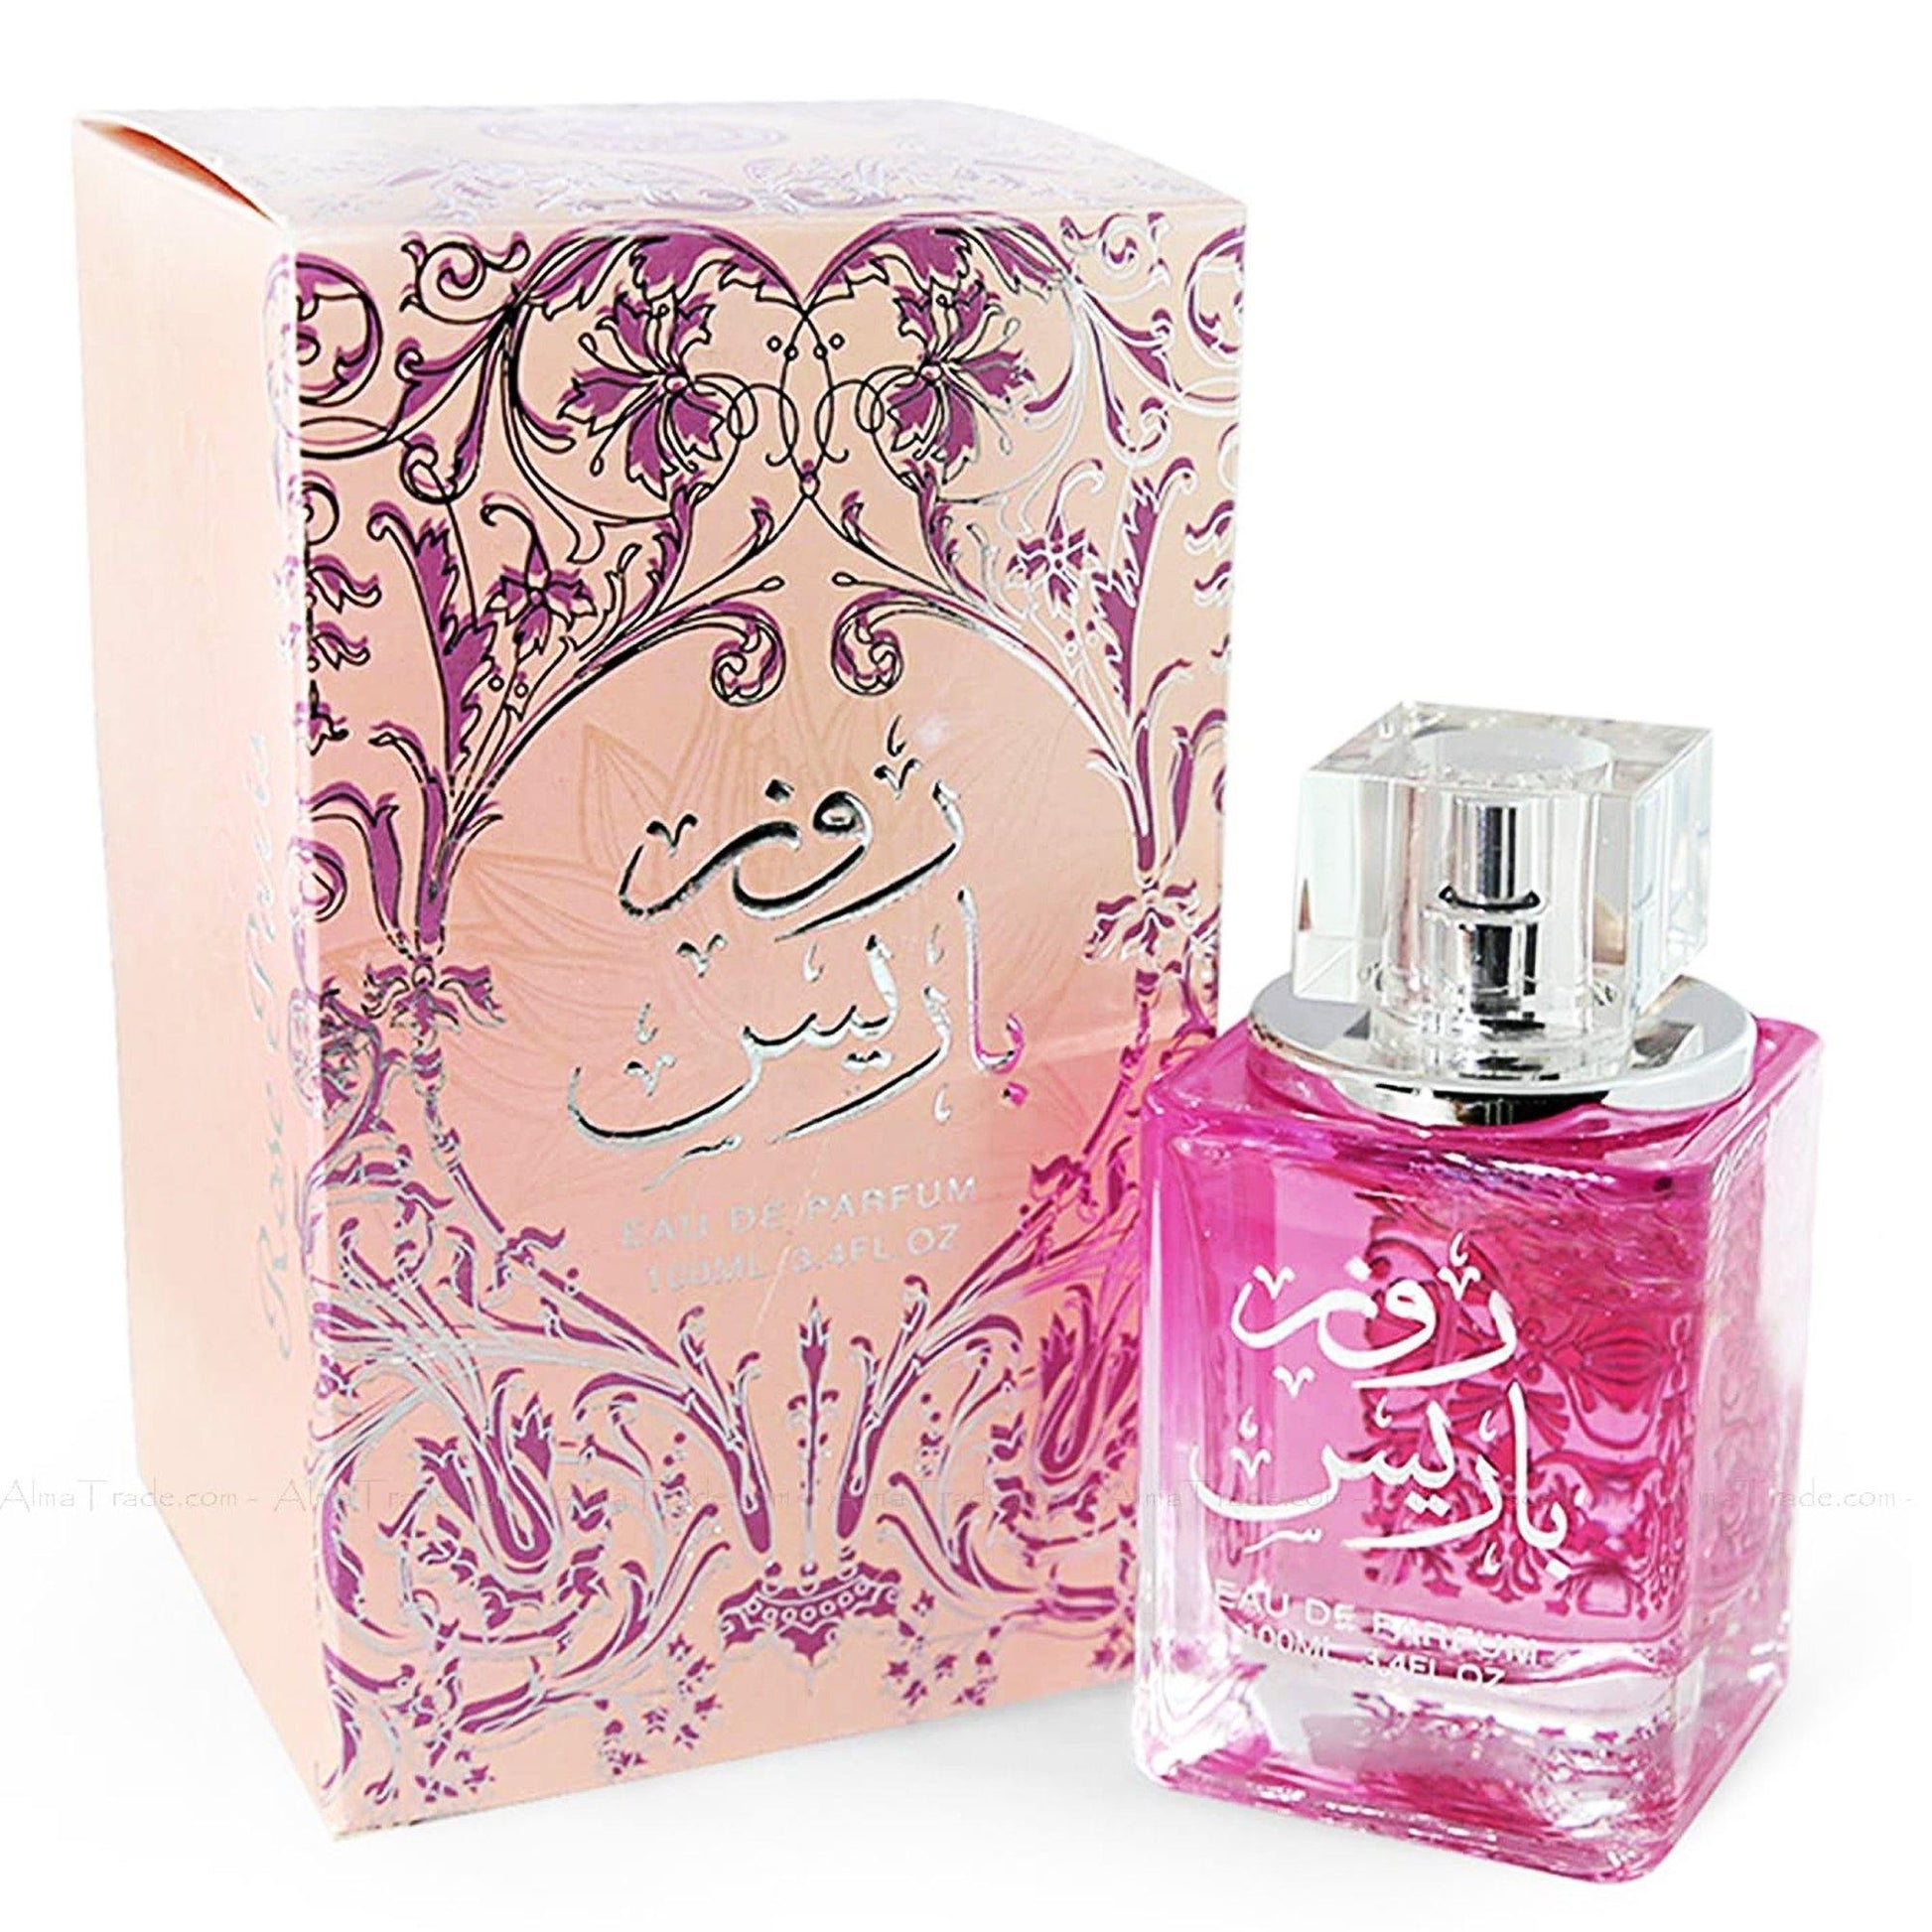 100 ml Eau de Parfume Rose Paris cu Arome Citrice Florale pentru Femei - Bijuterii TV